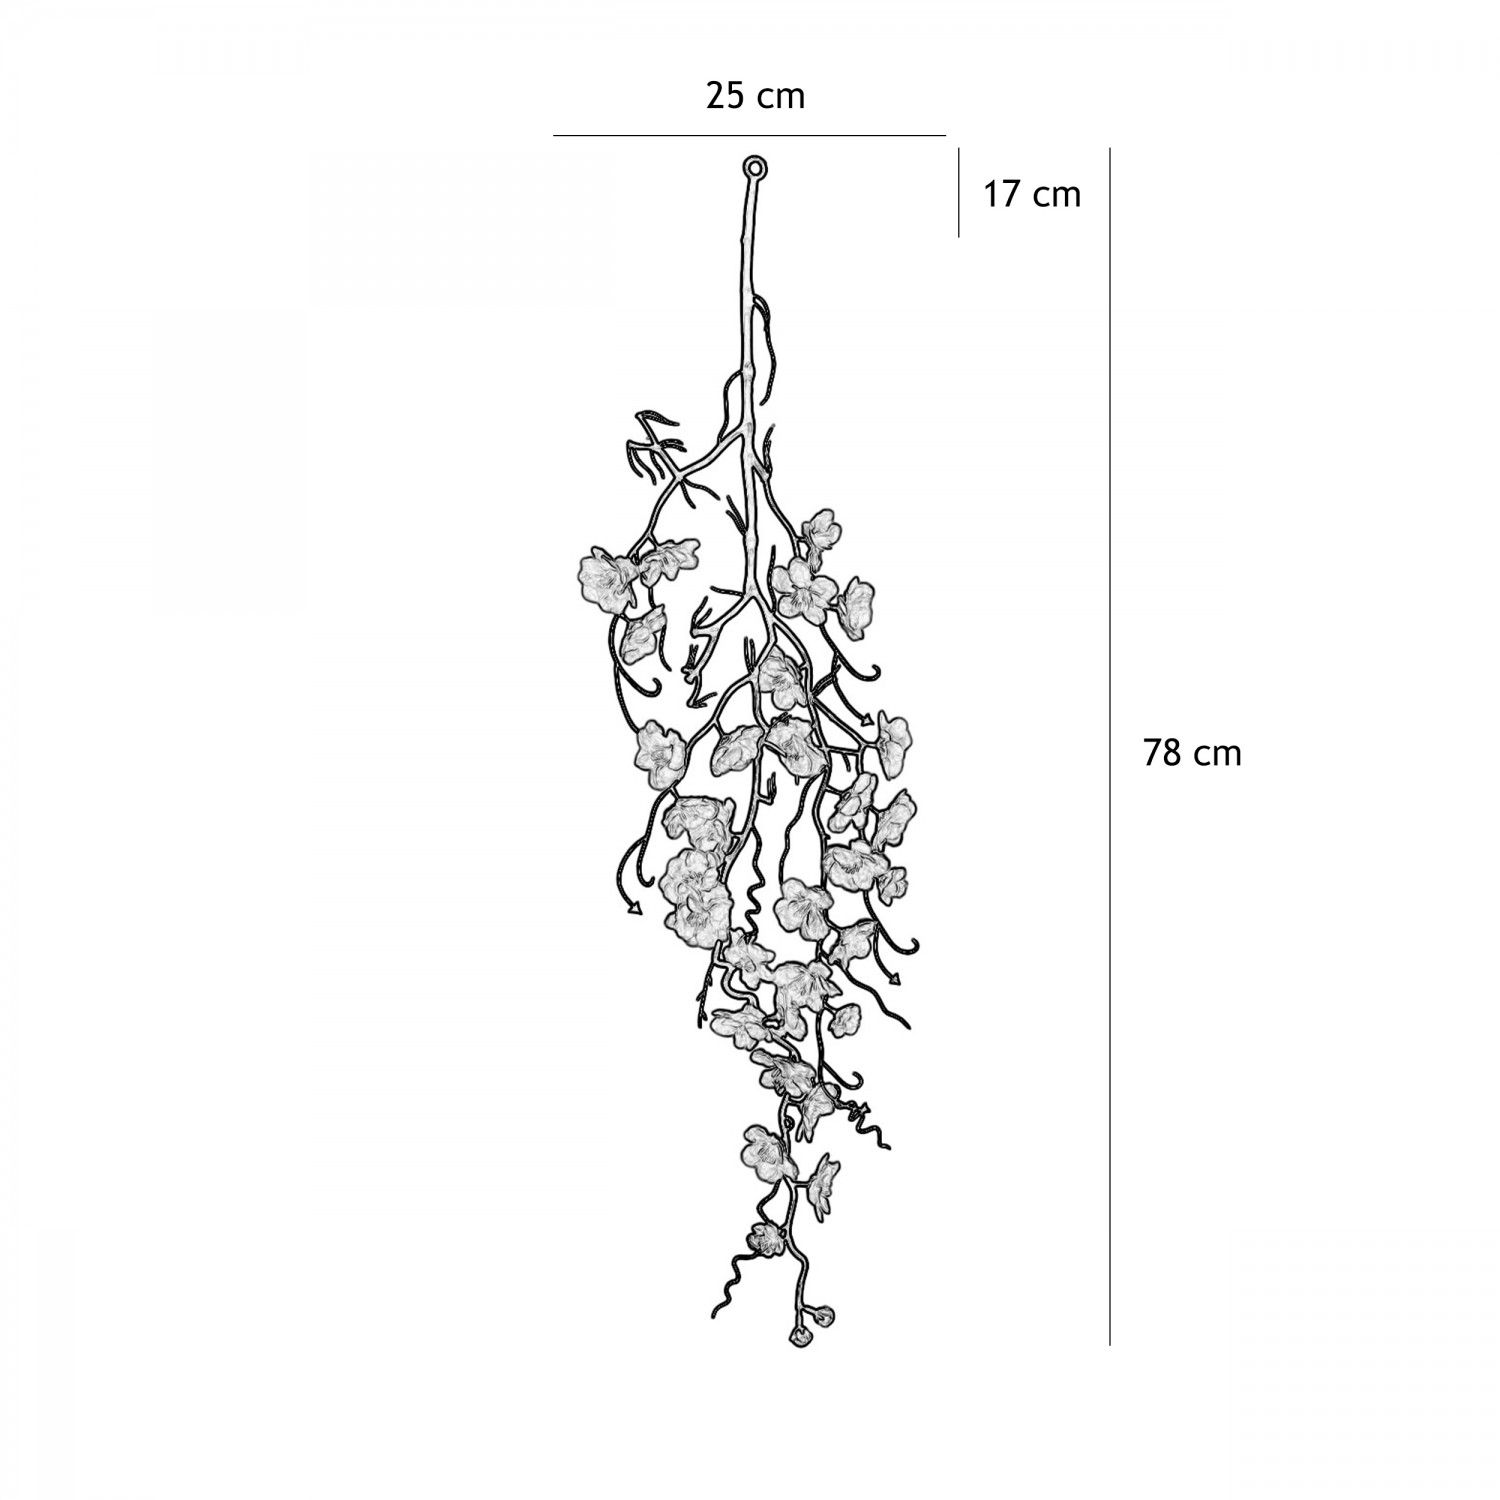 Chute plante artificielle cerisier rose 78cm lot de 3 graphique avec les dimensions